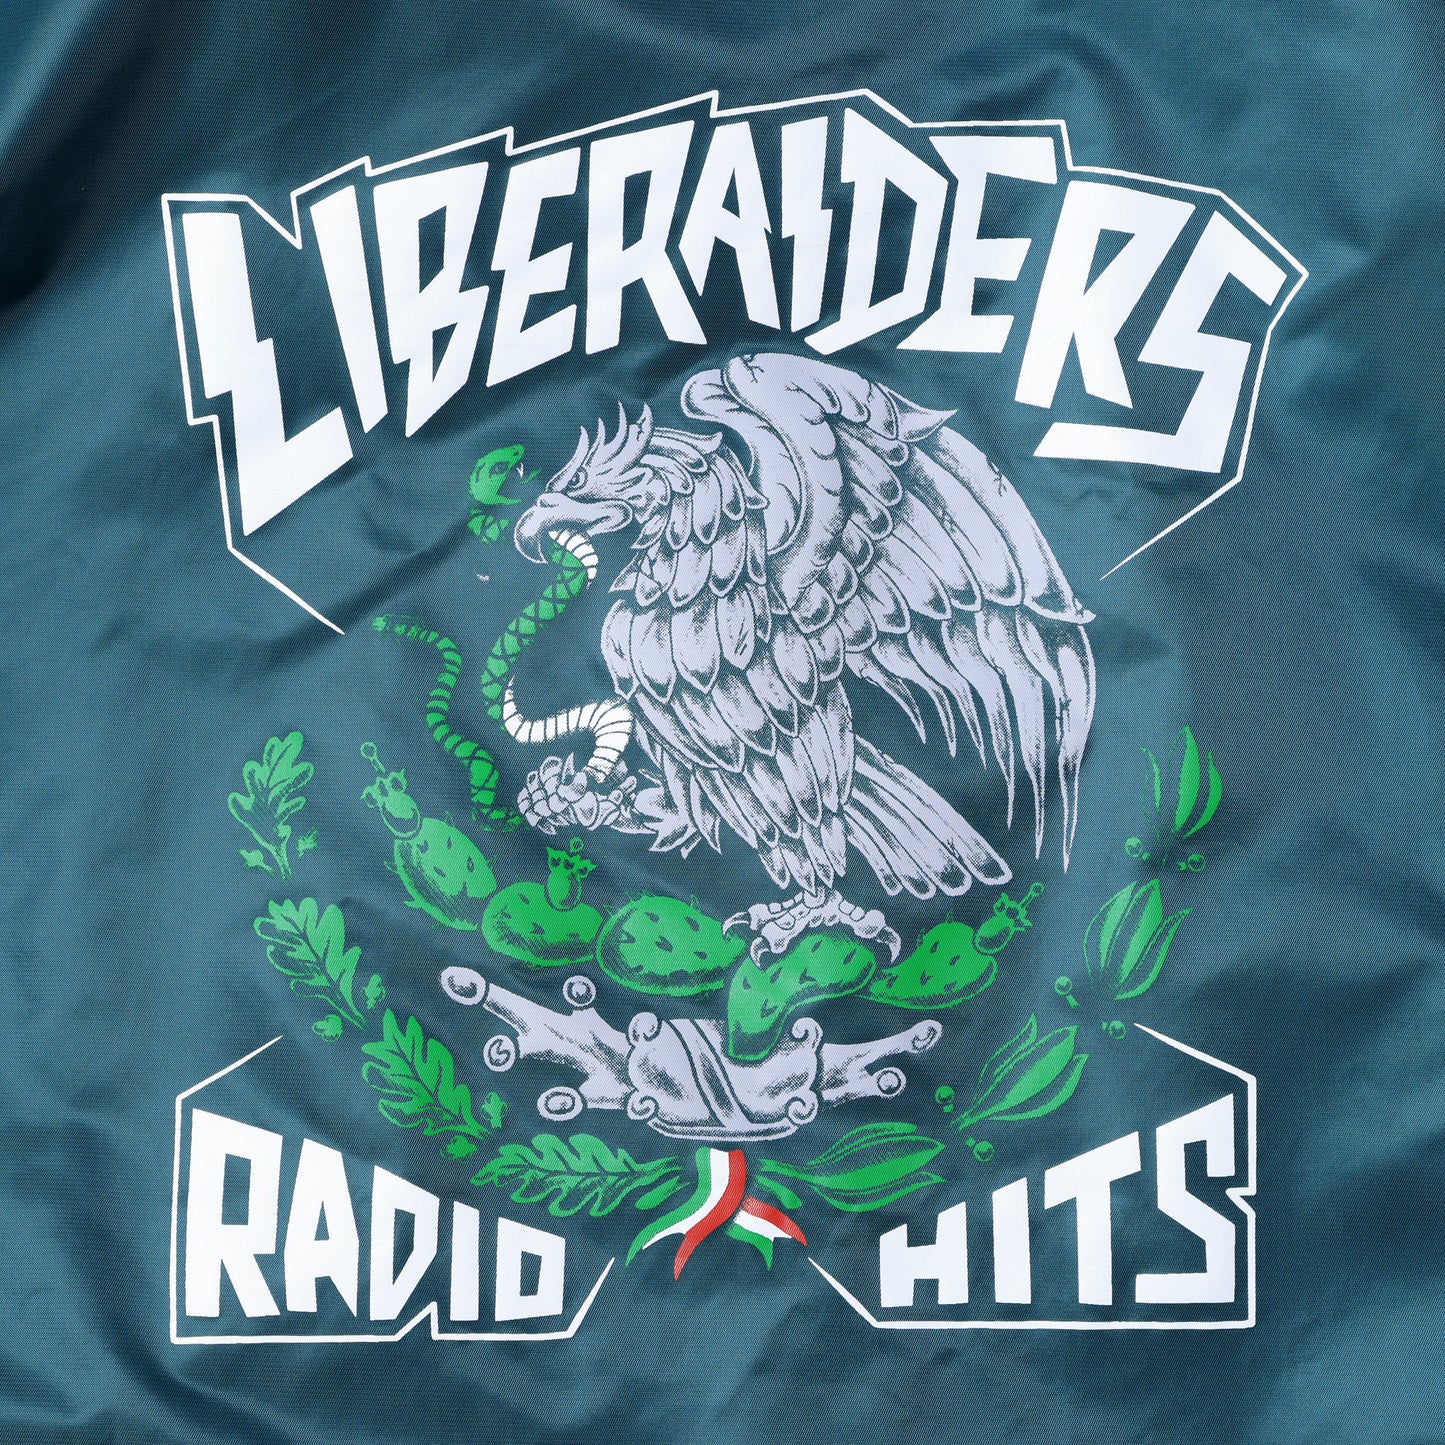 Liberaiders 23 /RADIO HITS COACH JACKET 75012